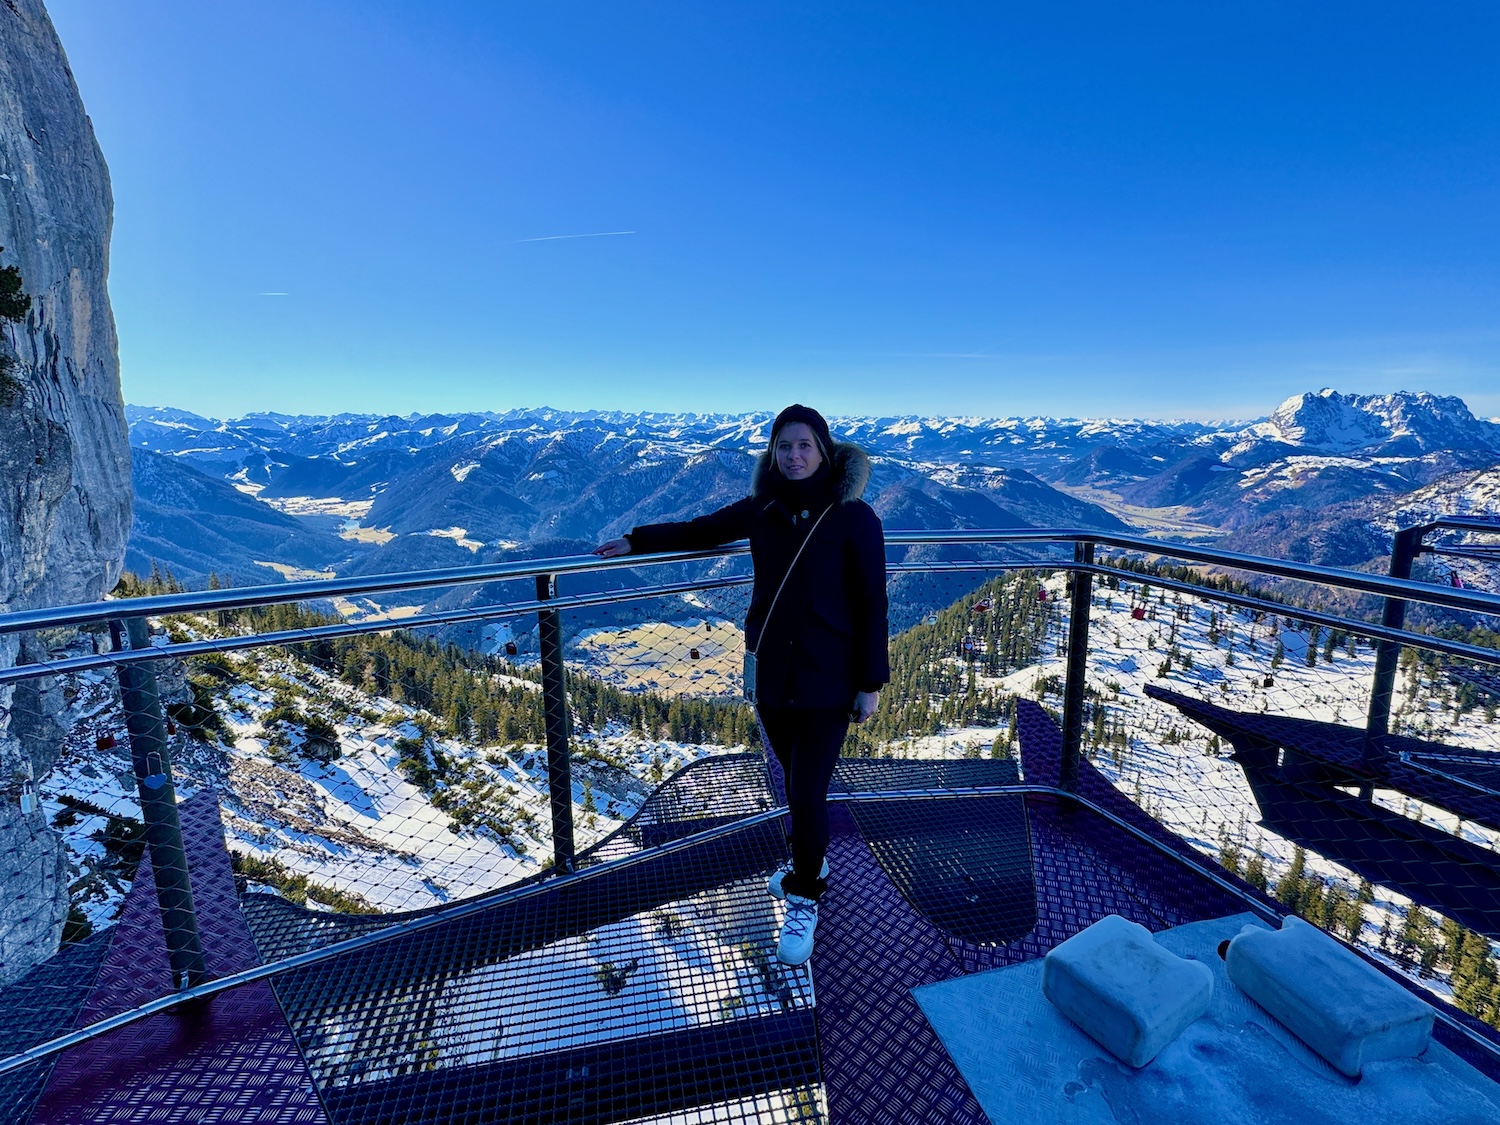 A Waidring puoi fare un'escursione fino alla spettacolare piattaforma panoramica, dalla quale avrai una vista panoramica mozzafiato. Foto: Sascha Tegtmeyer vacanza sugli sci a Fieberbrunn vacanze invernali rapporto di viaggio rapporto esperienze esperienze